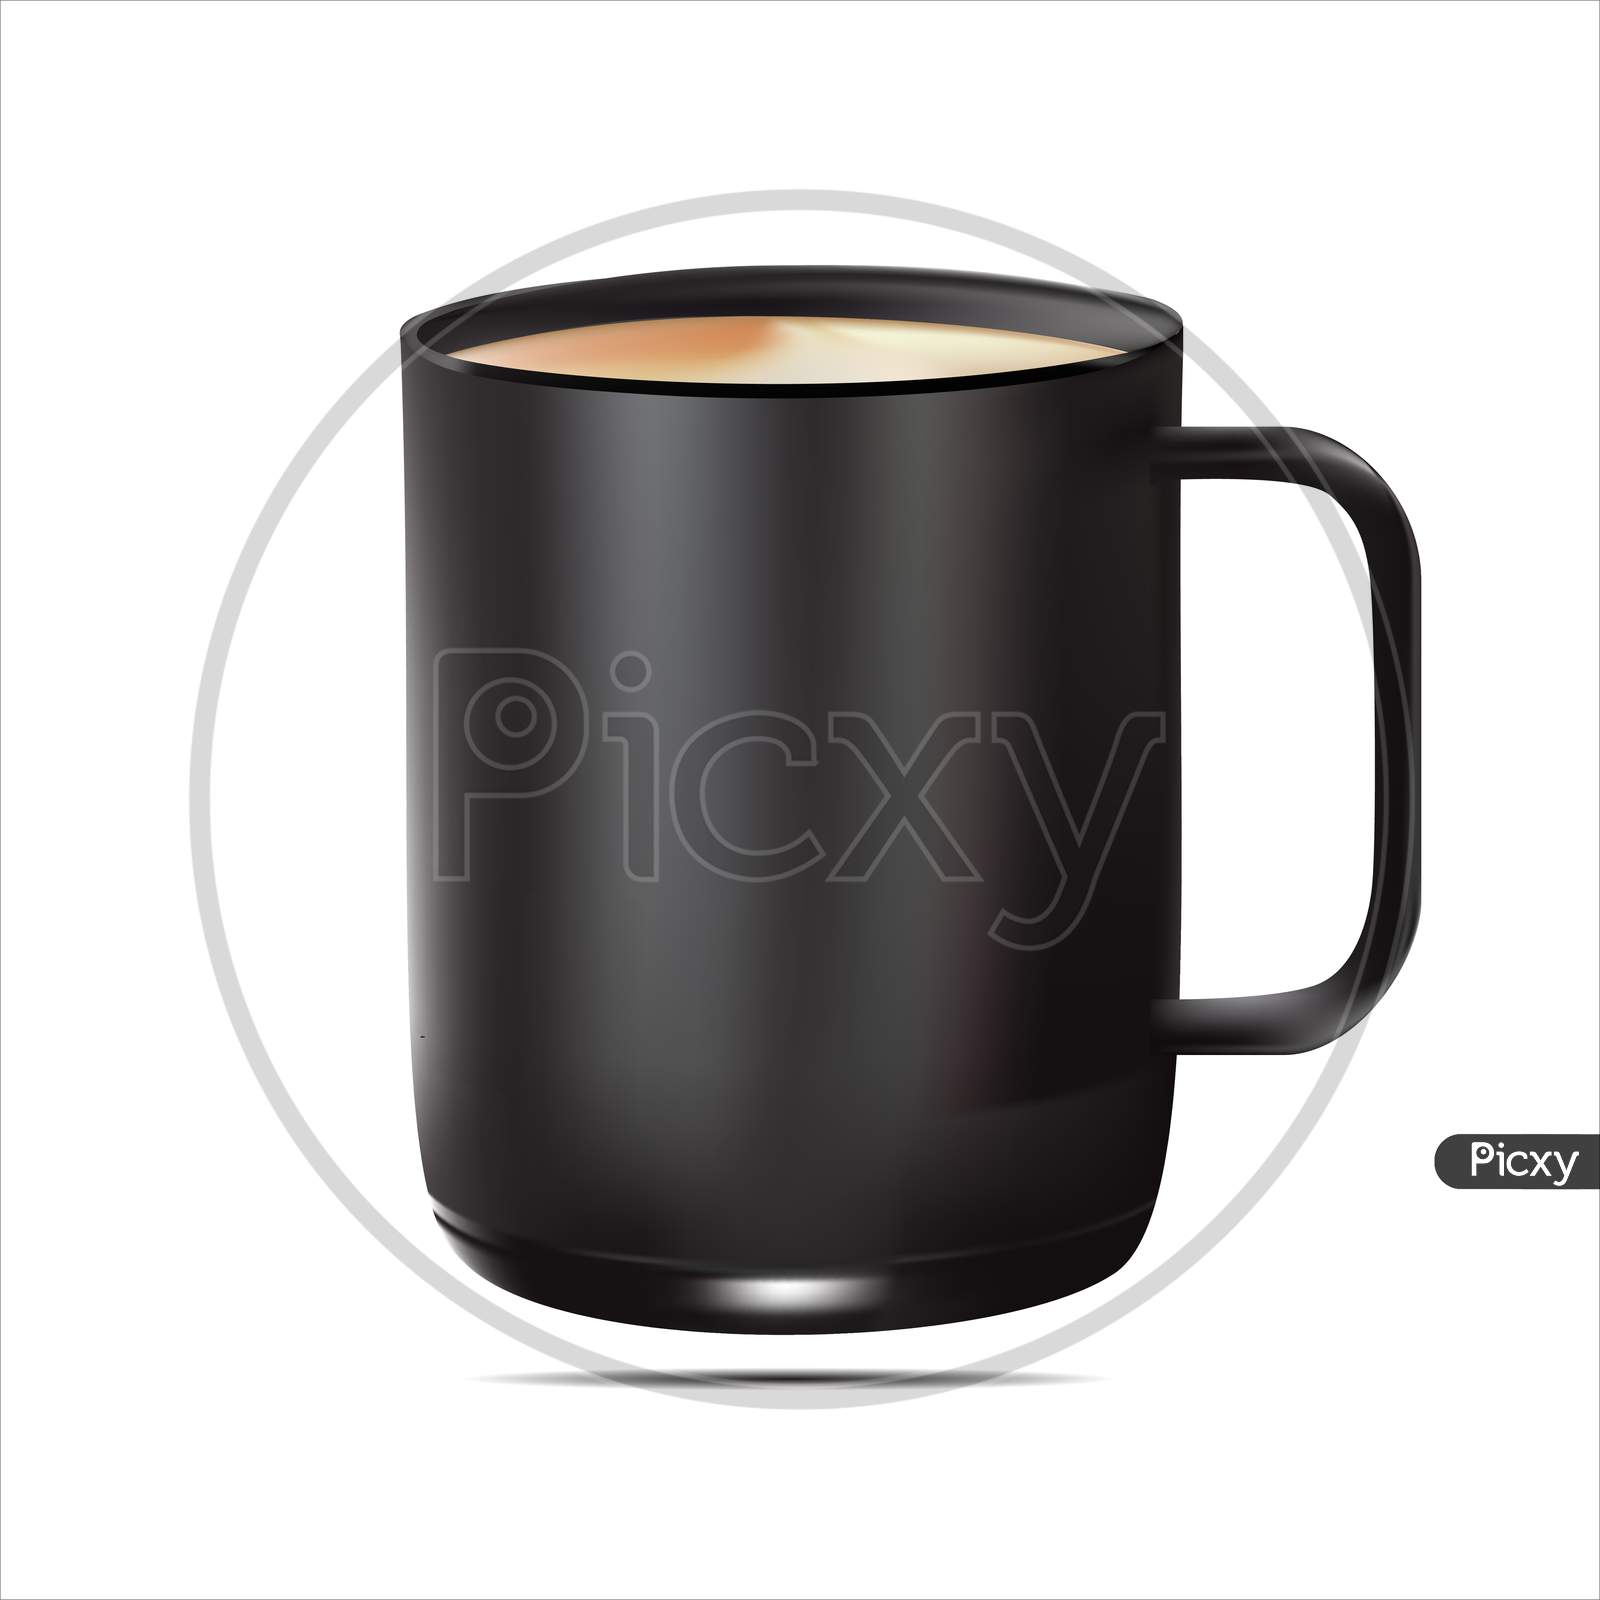 Black Coffee Mug With Coffee - Mug Mockup.